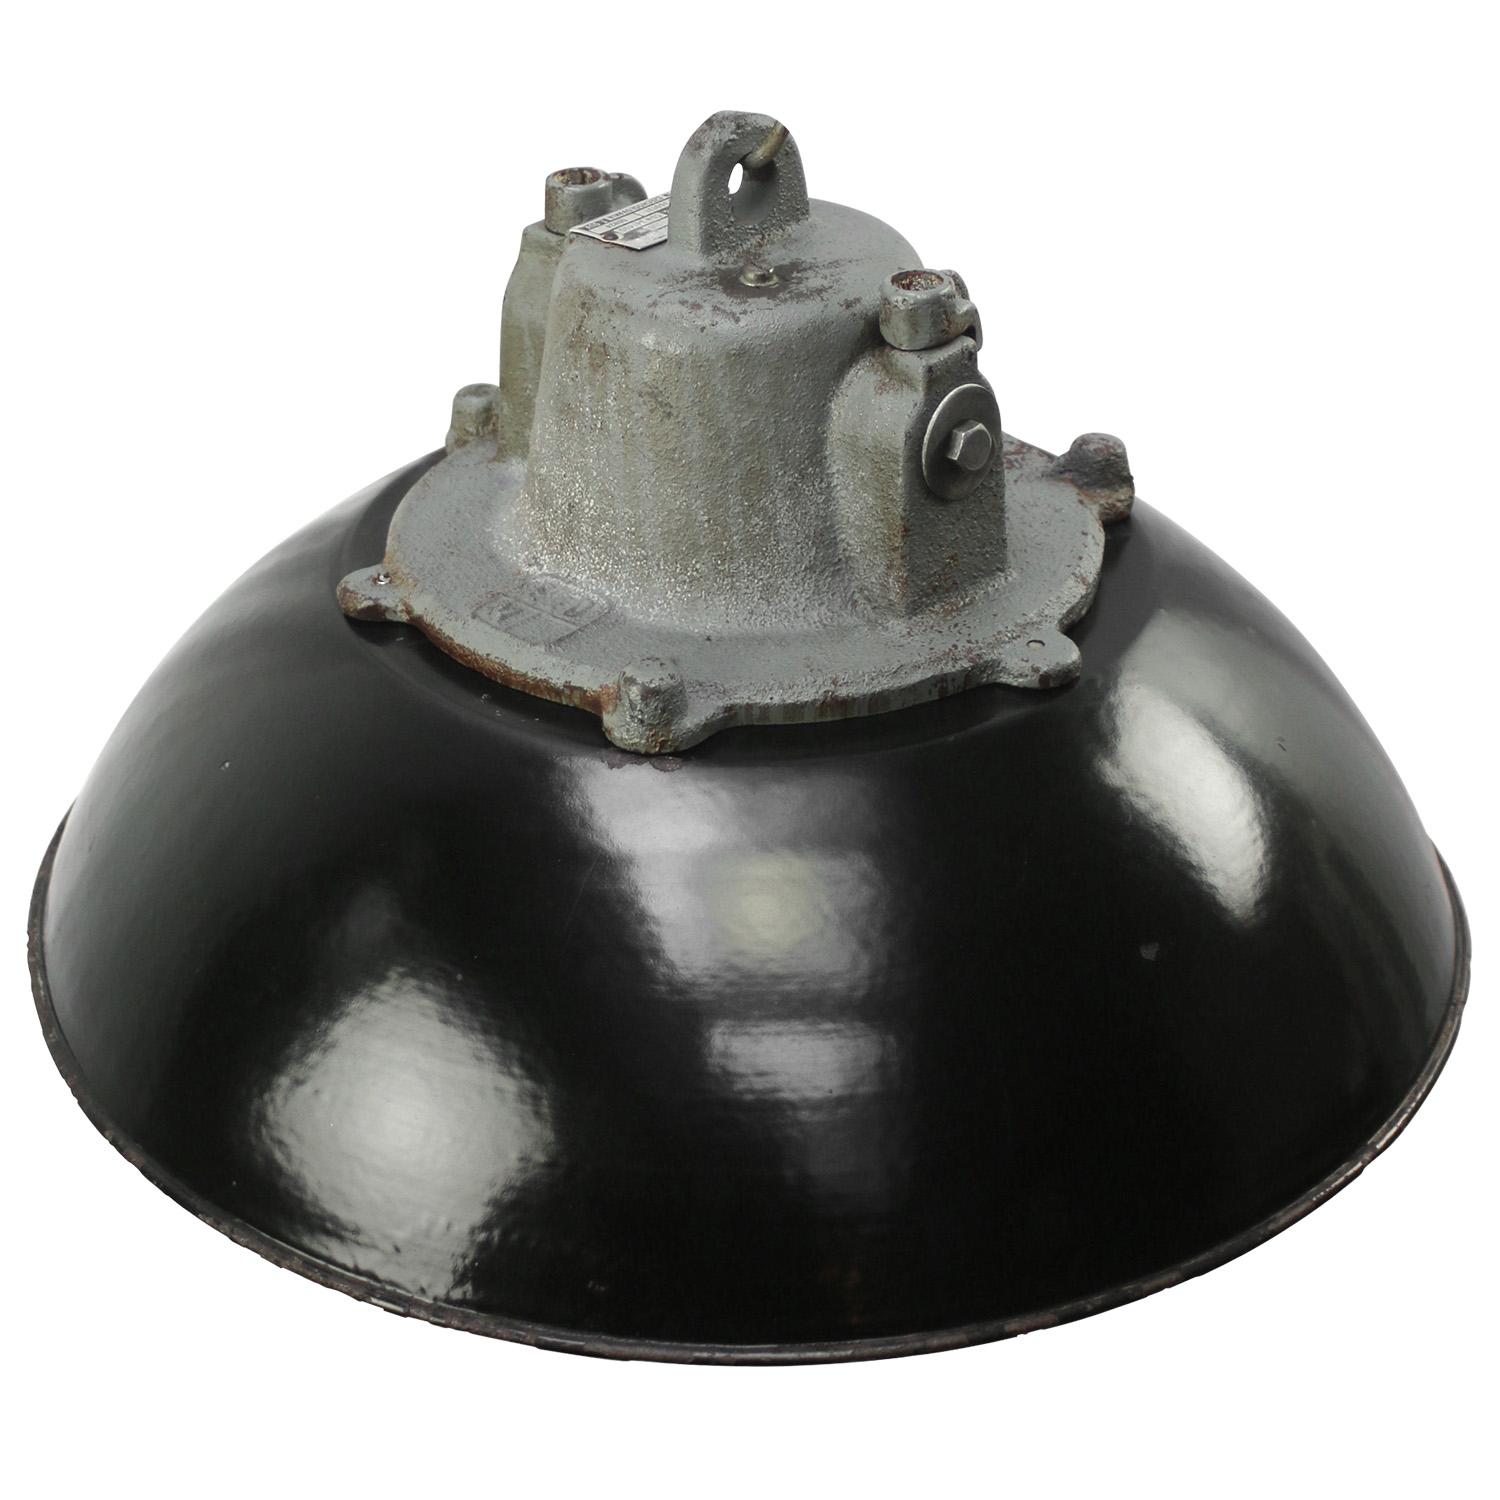 Schwarze Emaille mit gusseiserner Platte
Klarglas, Eisenkäfig

Gewicht: 9.00 kg / 19.8 lb

Der Preis gilt für jeden einzelnen Artikel. Alle Lampen sind nach internationalen Normen für Glühbirnen, energieeffiziente und LED-Lampen geeignet.